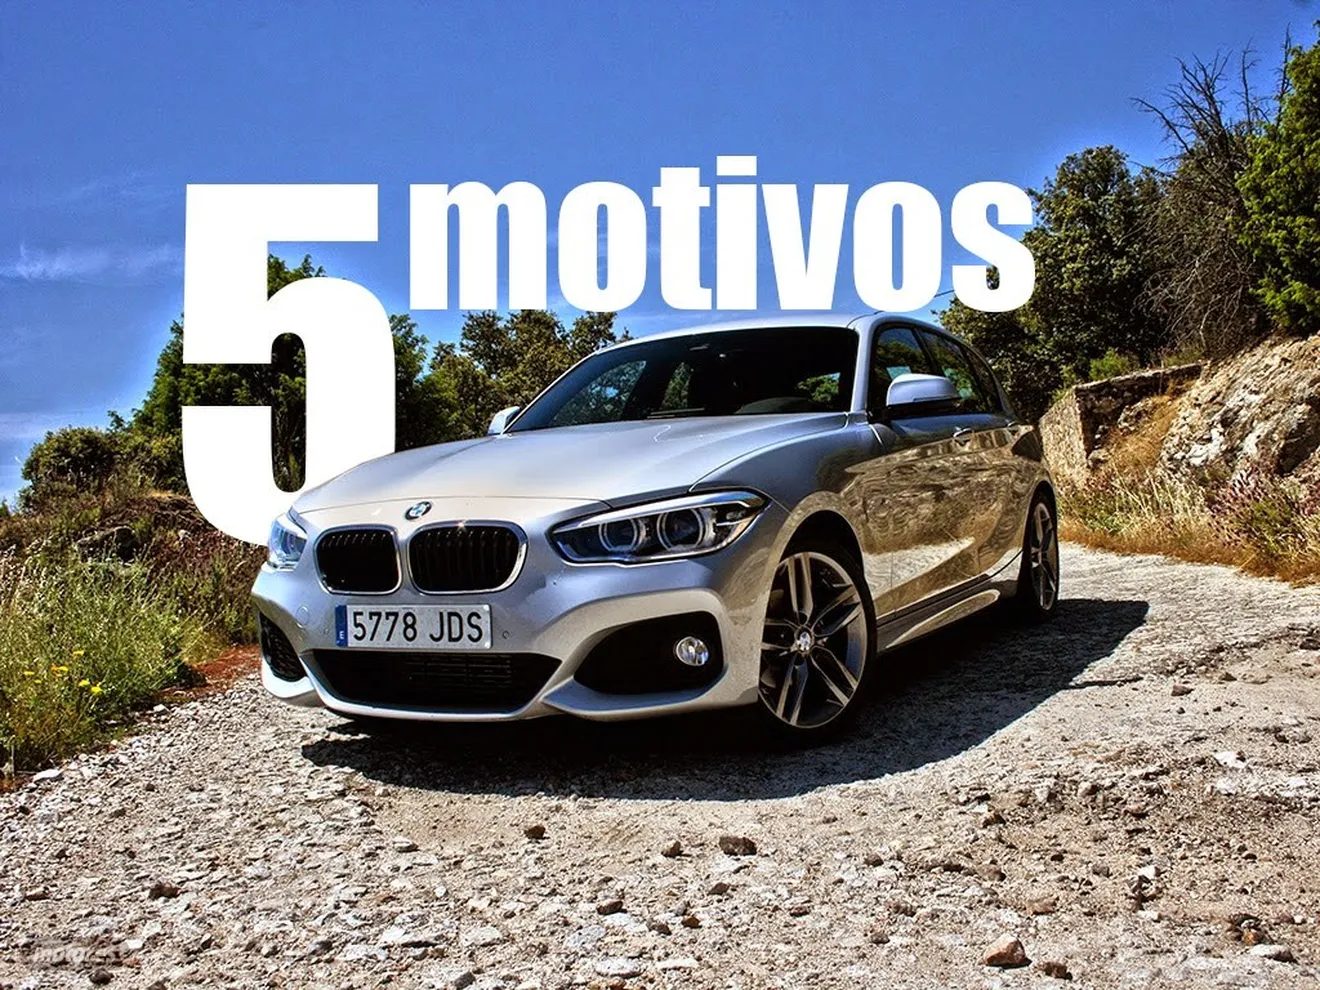 BMW Serie 1 2015, cinco motivos para plantearse su compra